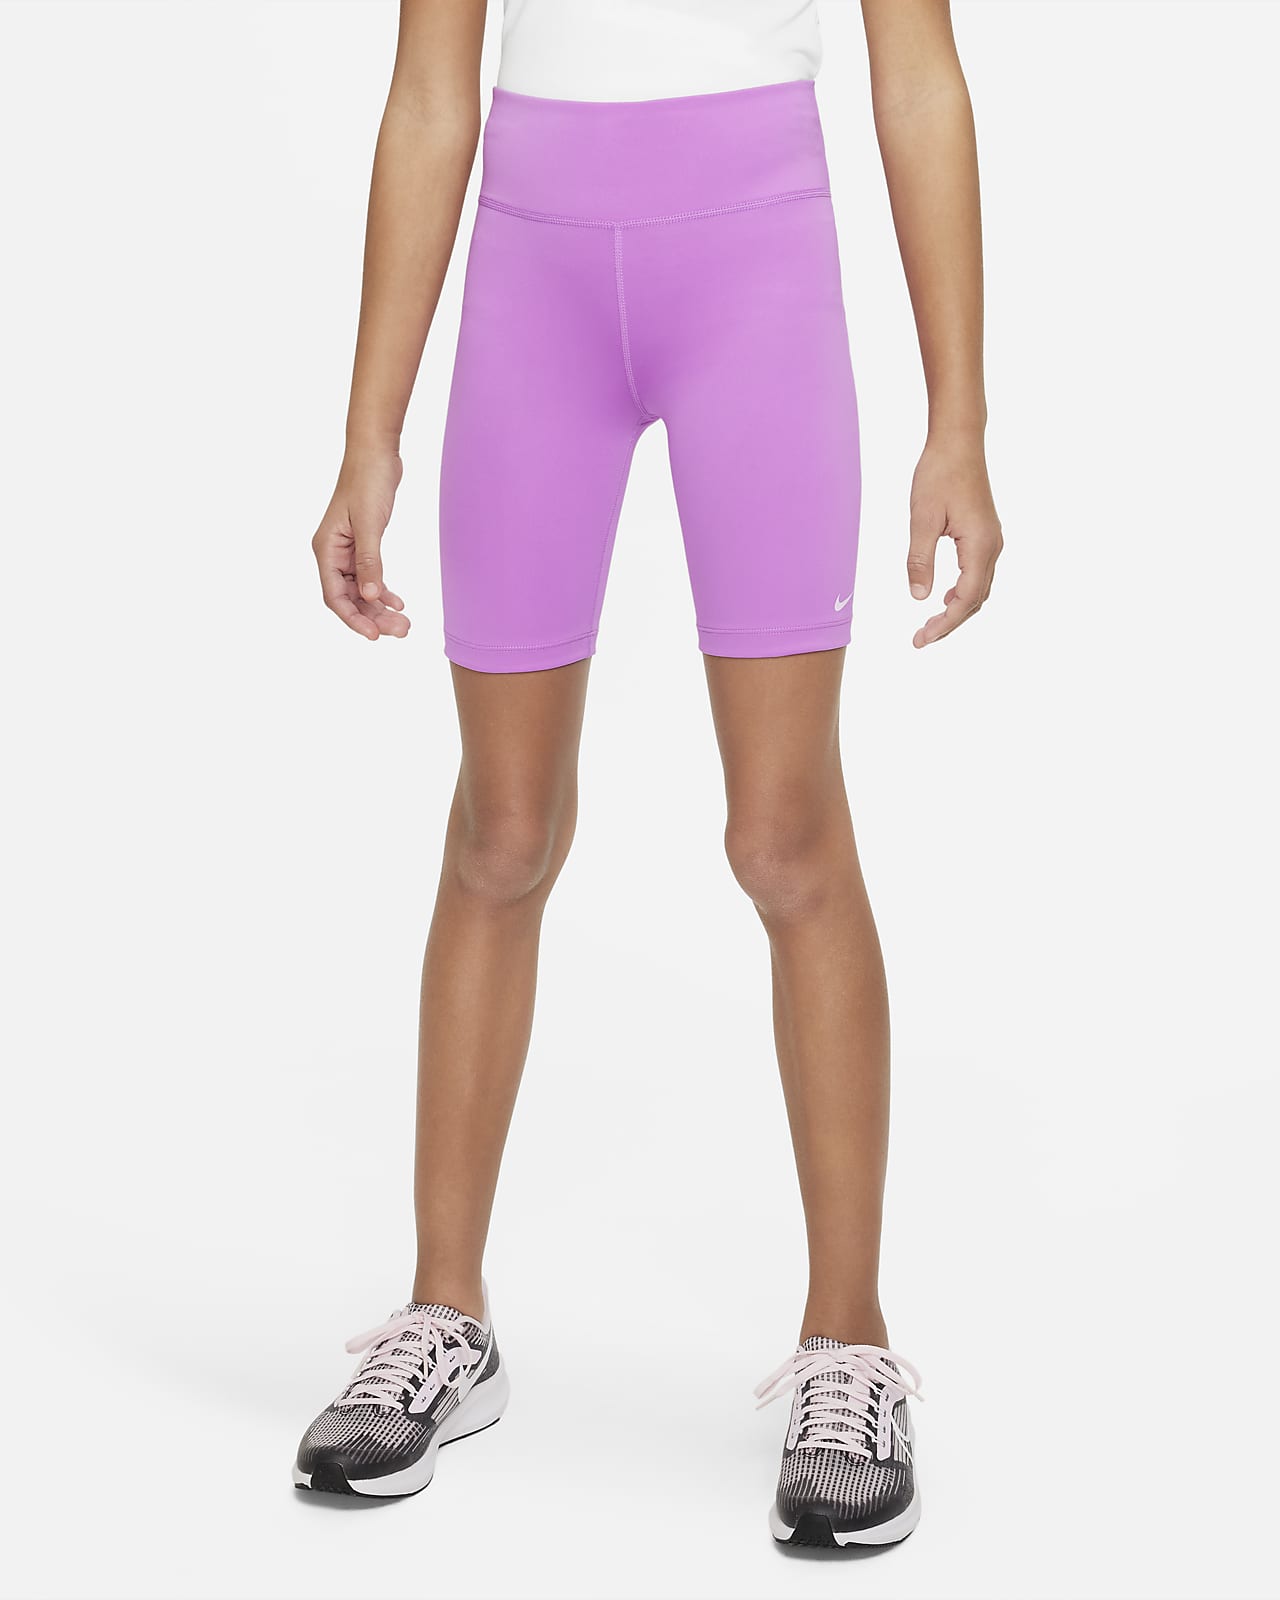 Nike One Big Kids' (Girls') Bike Shorts